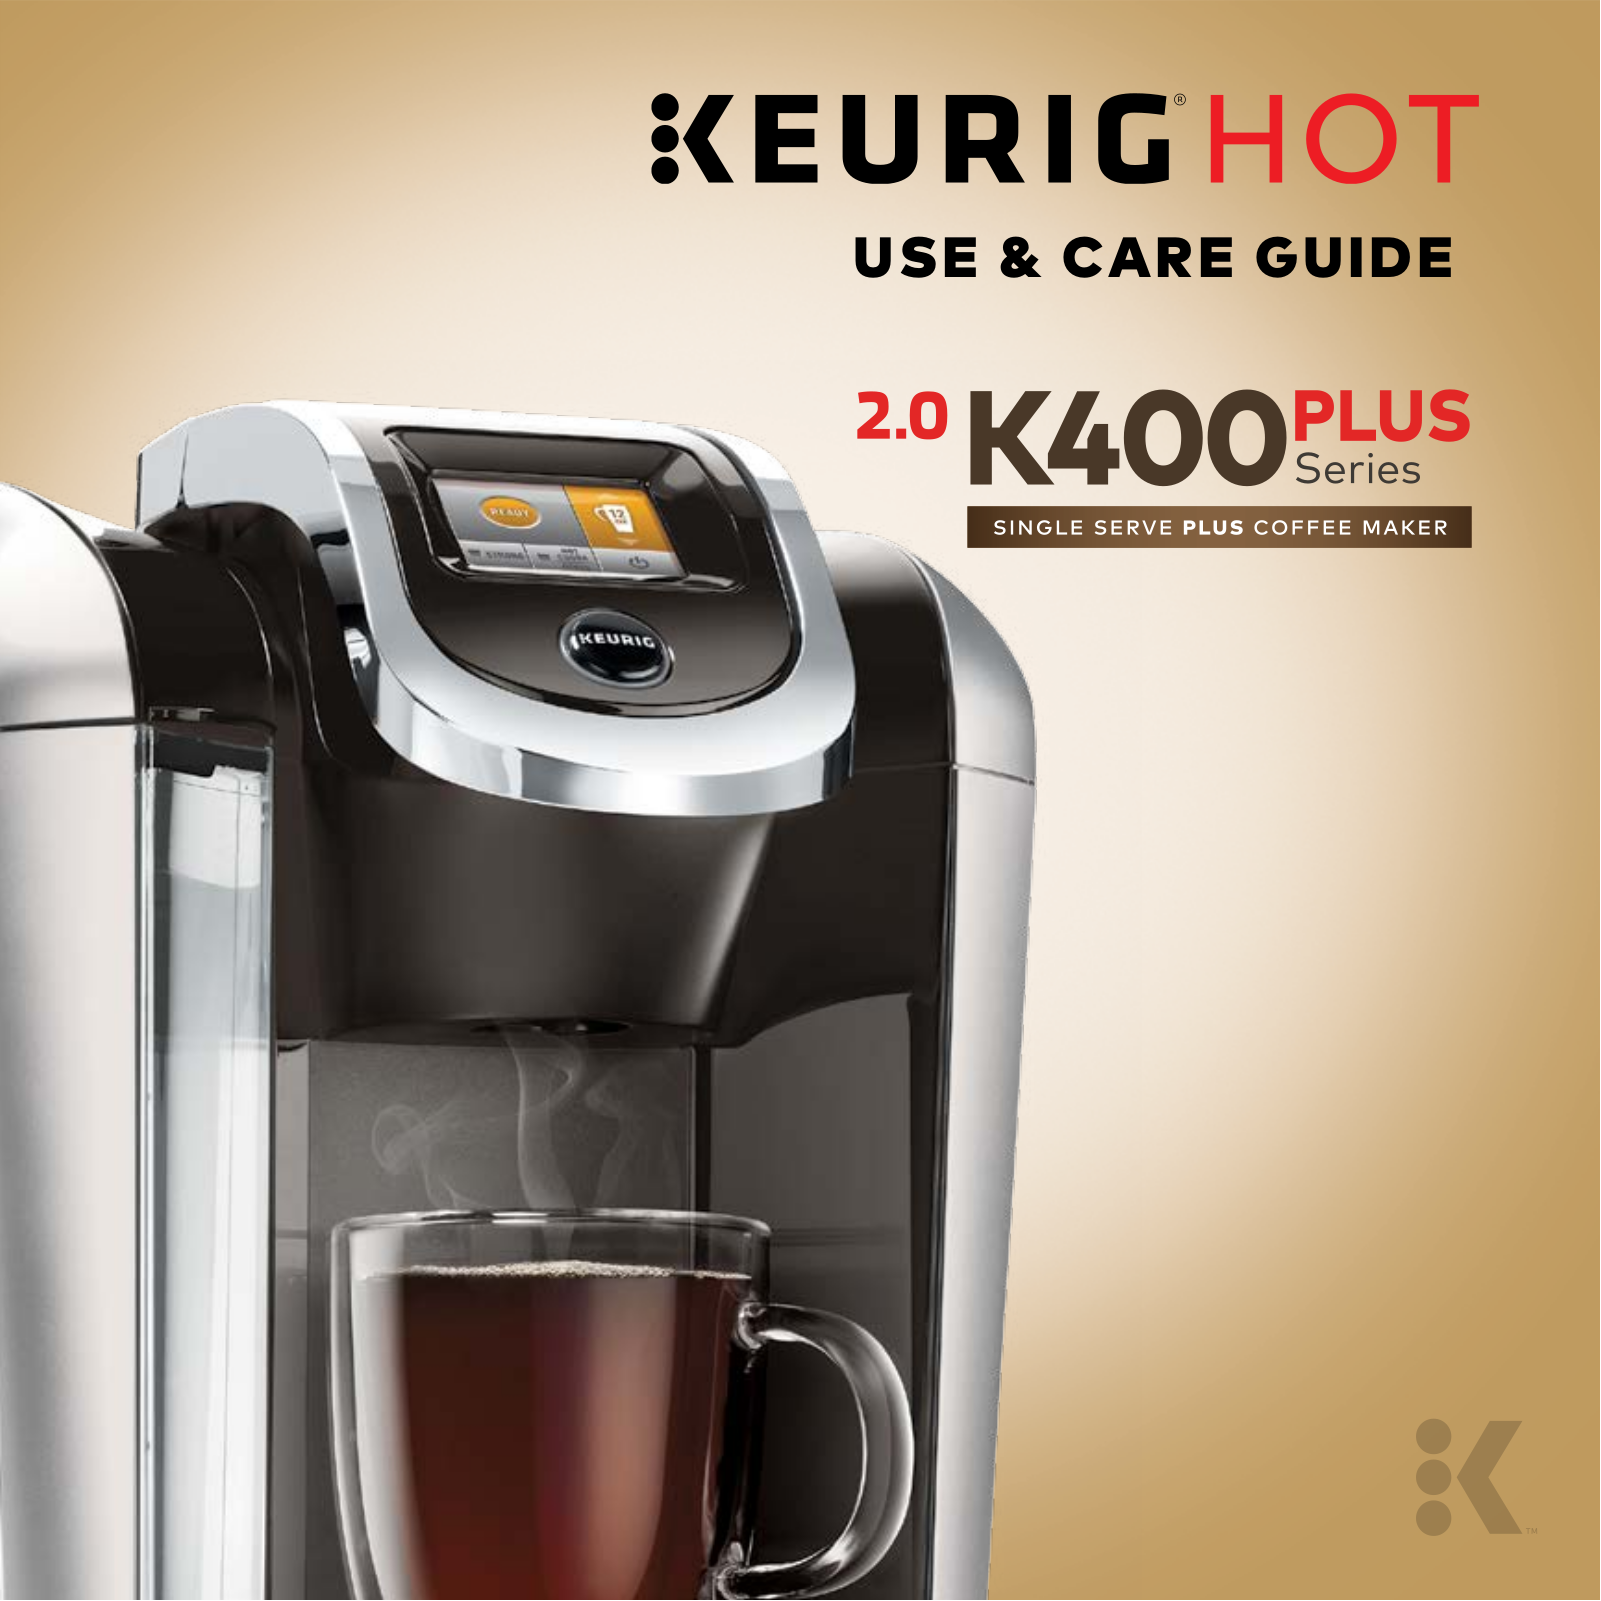 Keurig HOT 2.0 K400 Plus User Manual